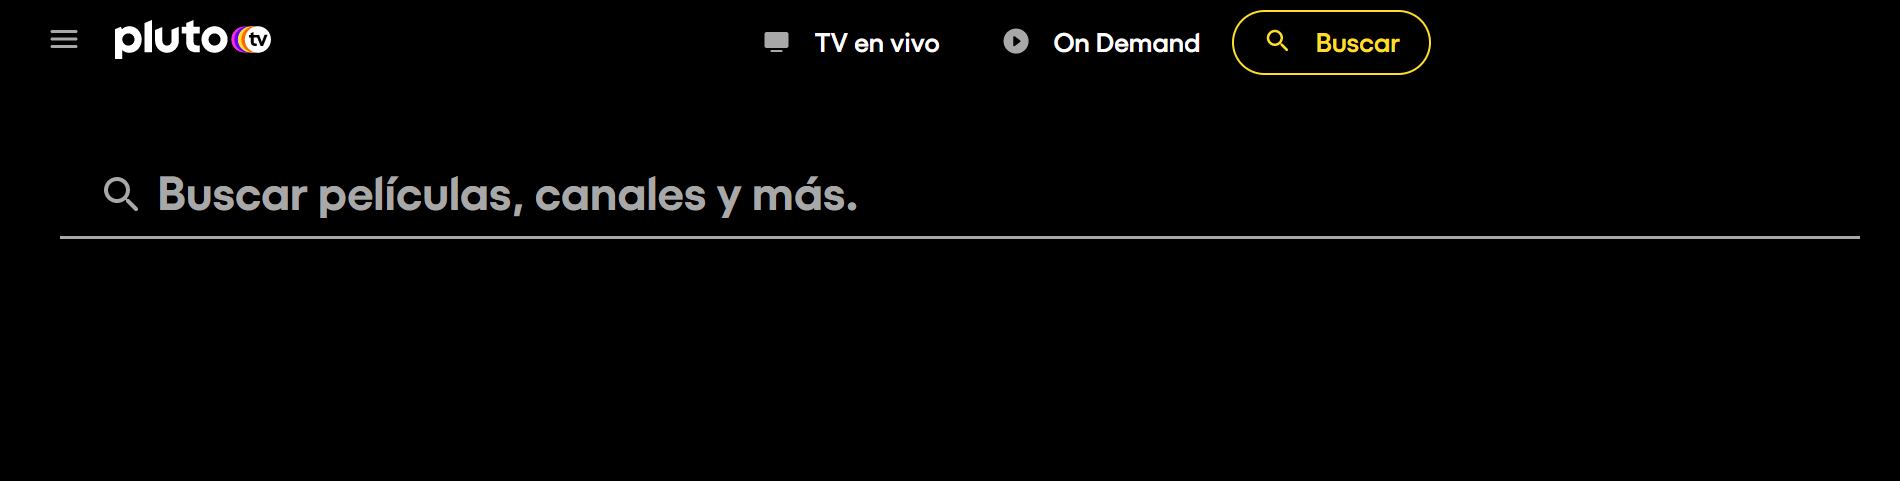 Pluto TV es un servicio que permite la visualización de canales de televisión. (Foto: pluto.tv)